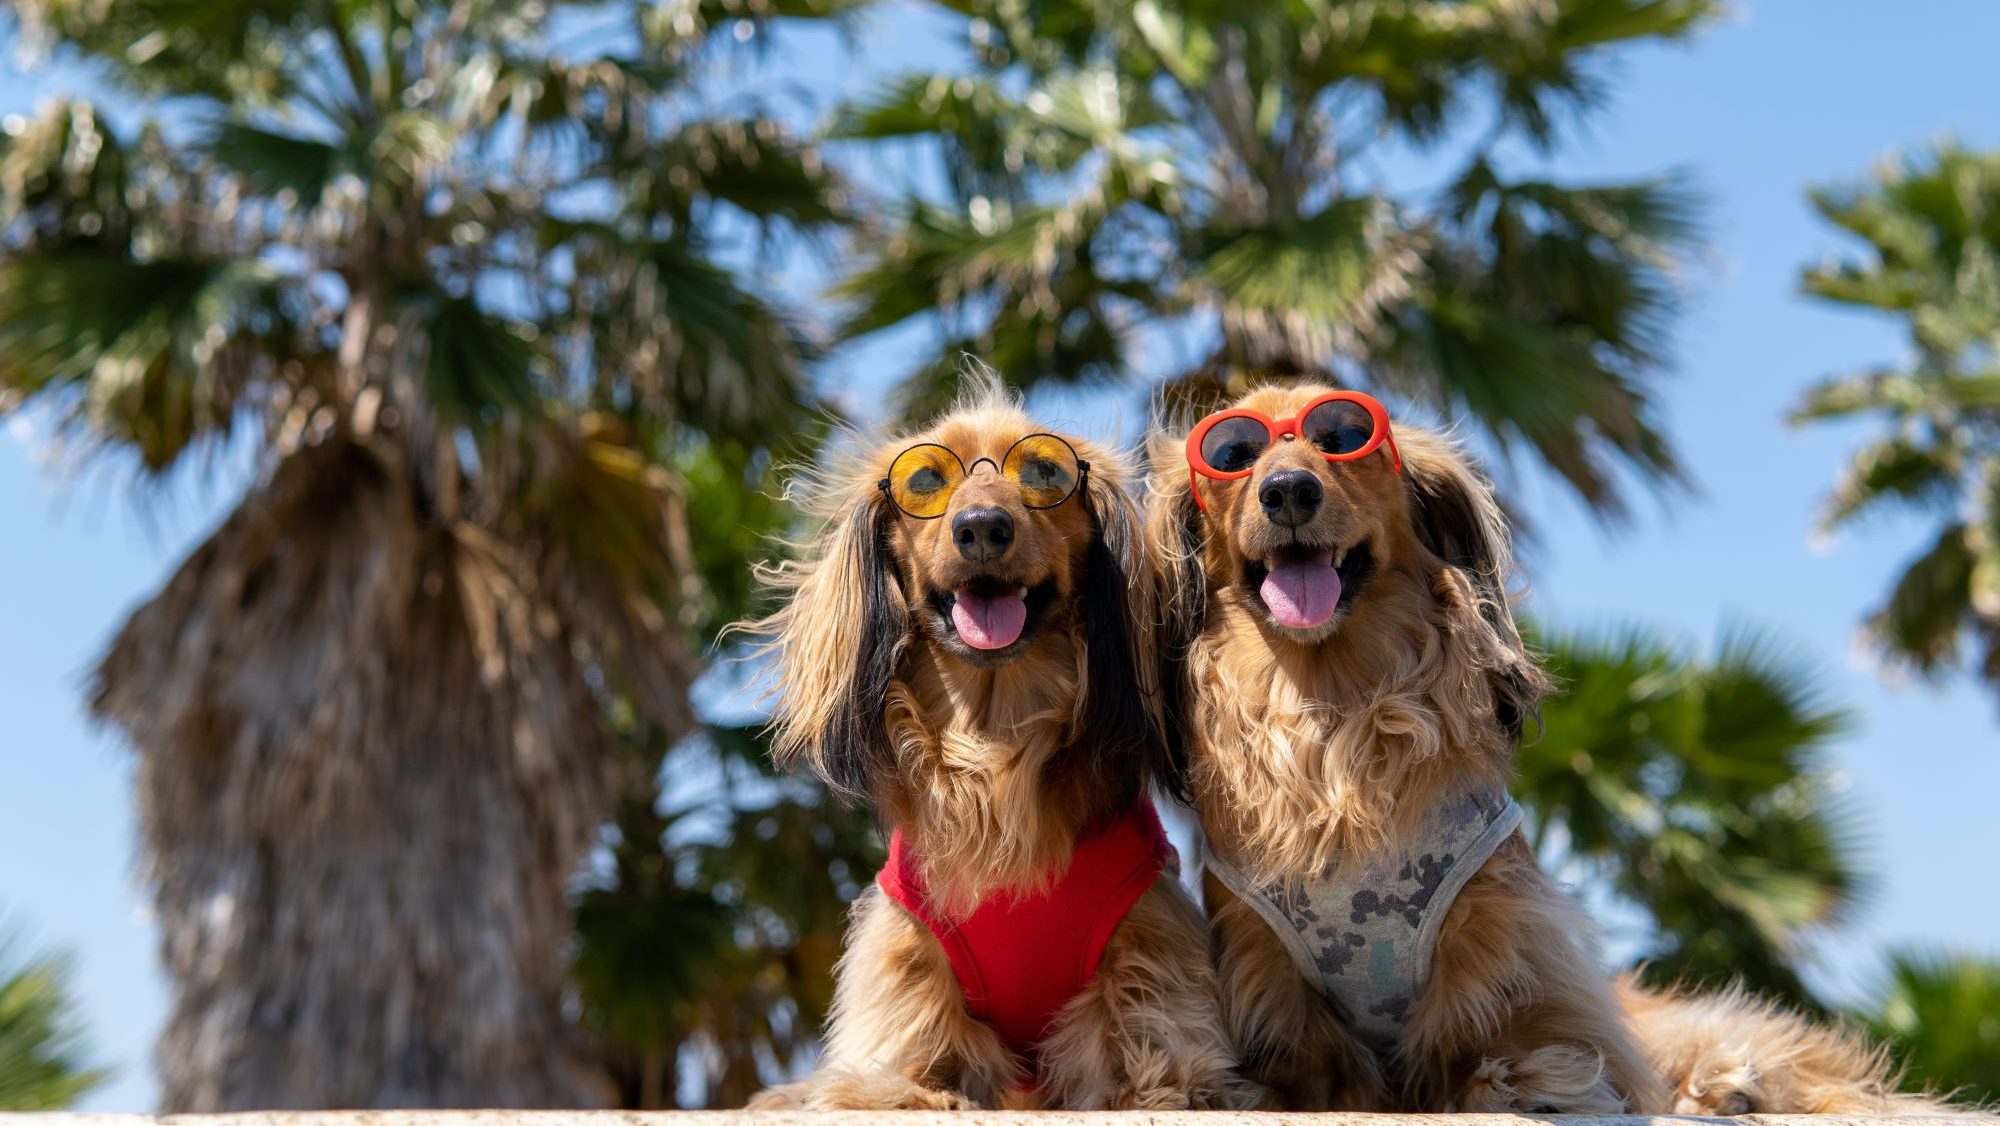 Camping Kroatien mit Hund- Zwei Dackel mit Sonnenbrillen und bunten Geschirr am Strand. Im Hintergrund sind Palmen.